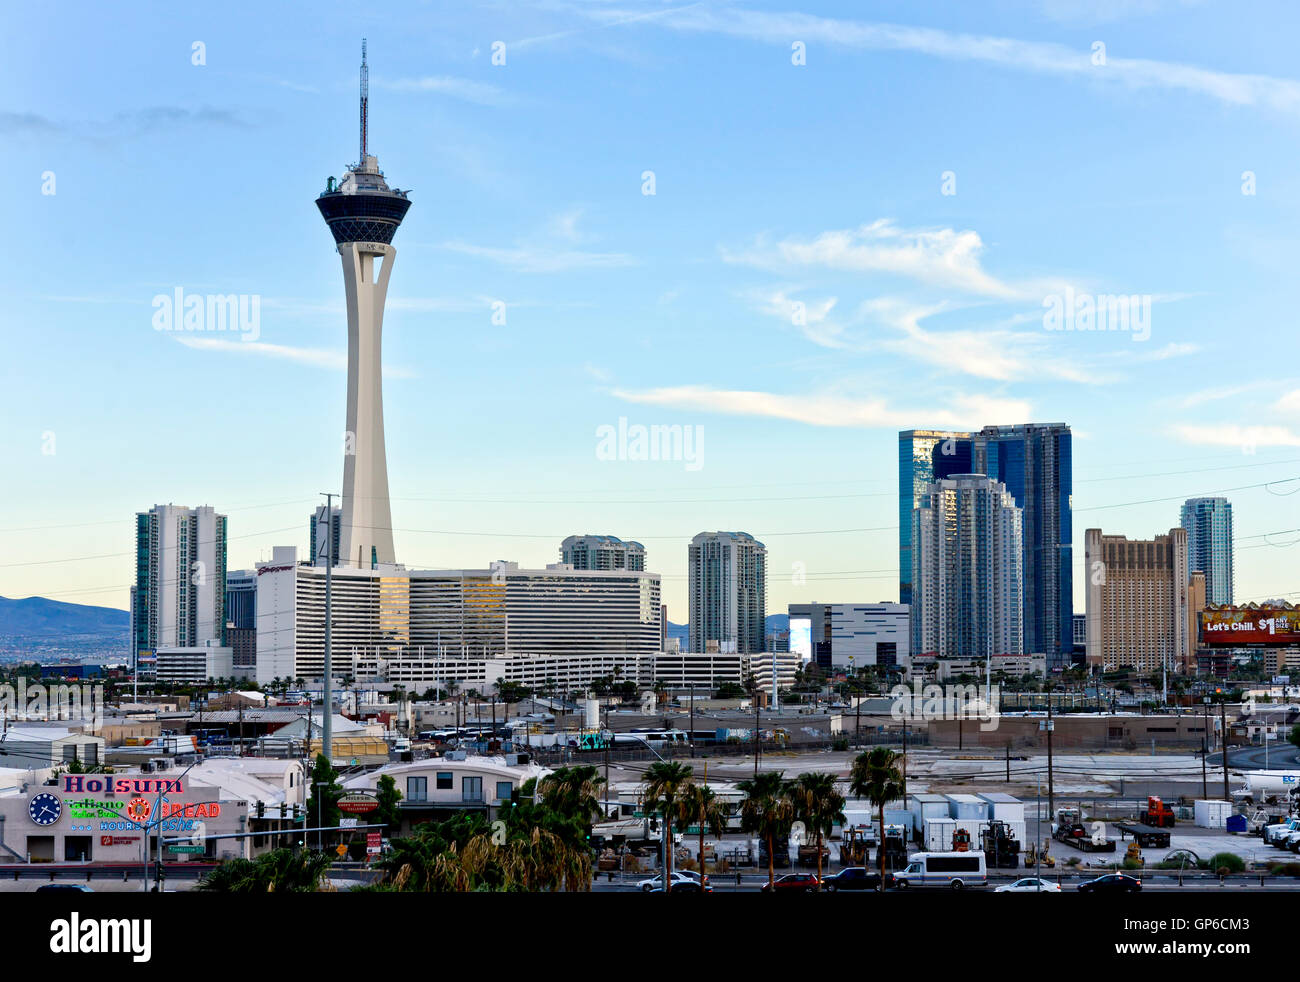 L'extrémité nord du Las Vegas Strip avec la stratosphère Tower, Hotel and Casino Banque D'Images